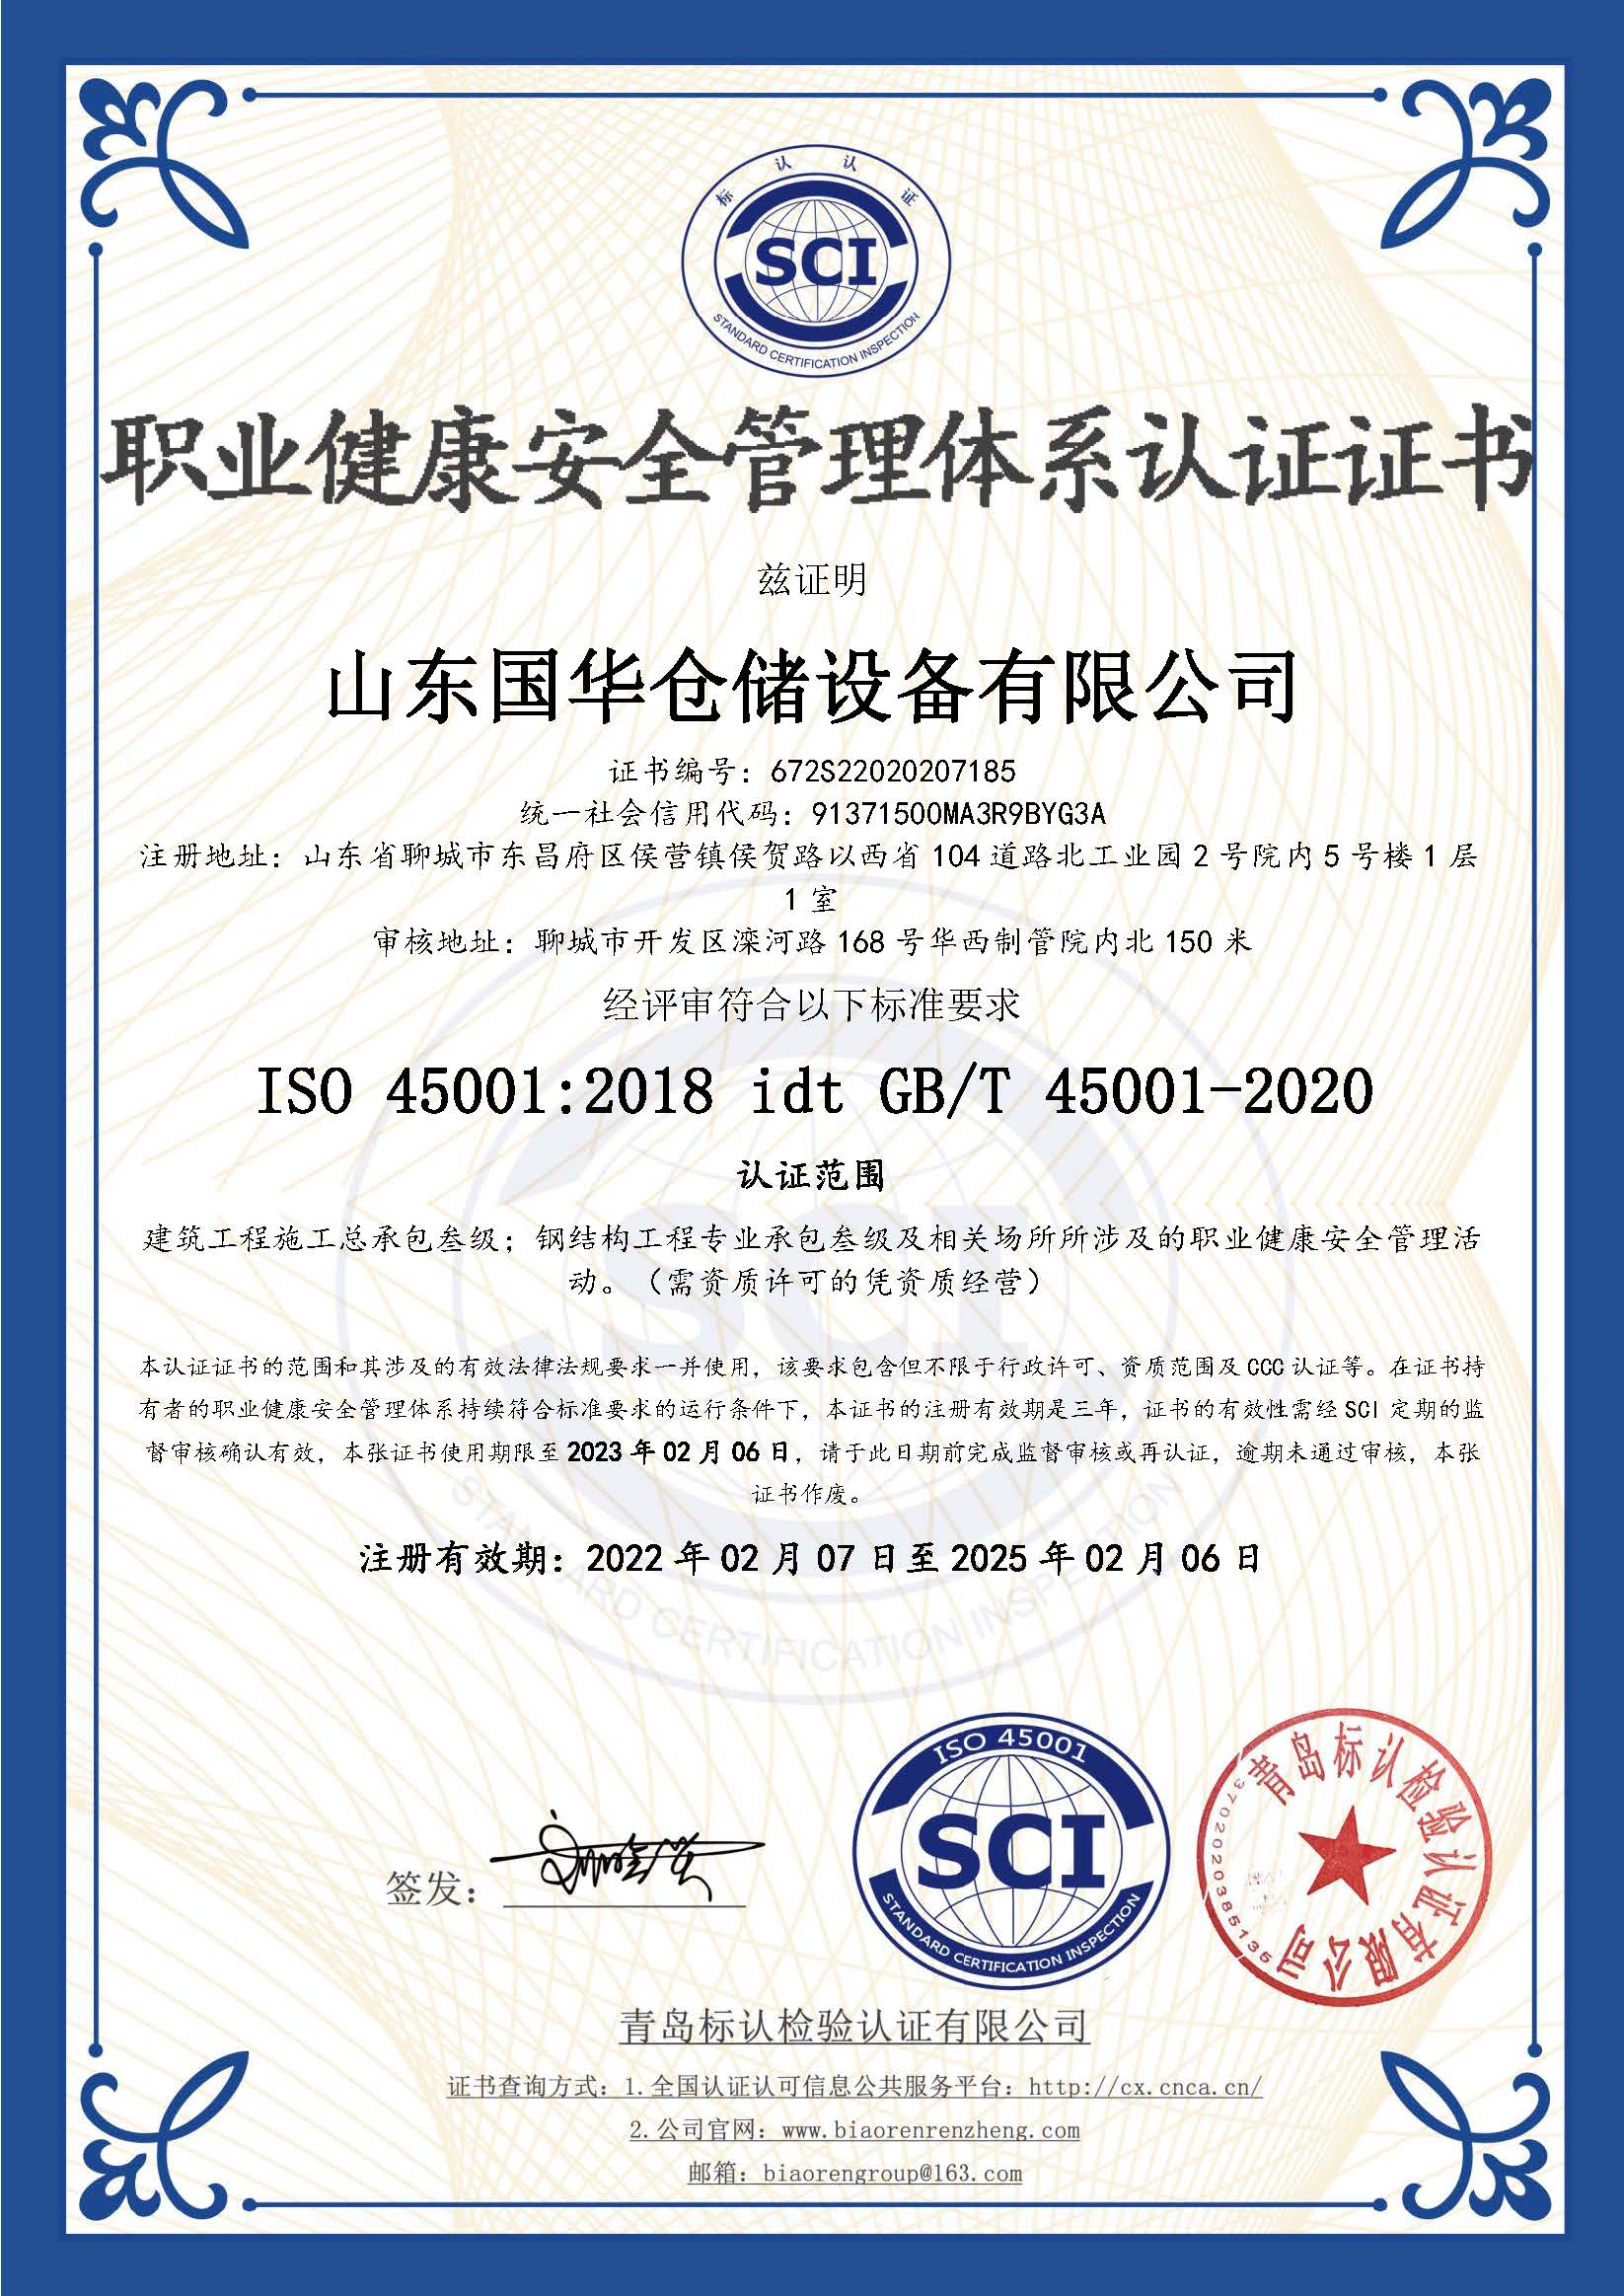 吐鲁番钢板仓职业健康安全管理体系认证证书